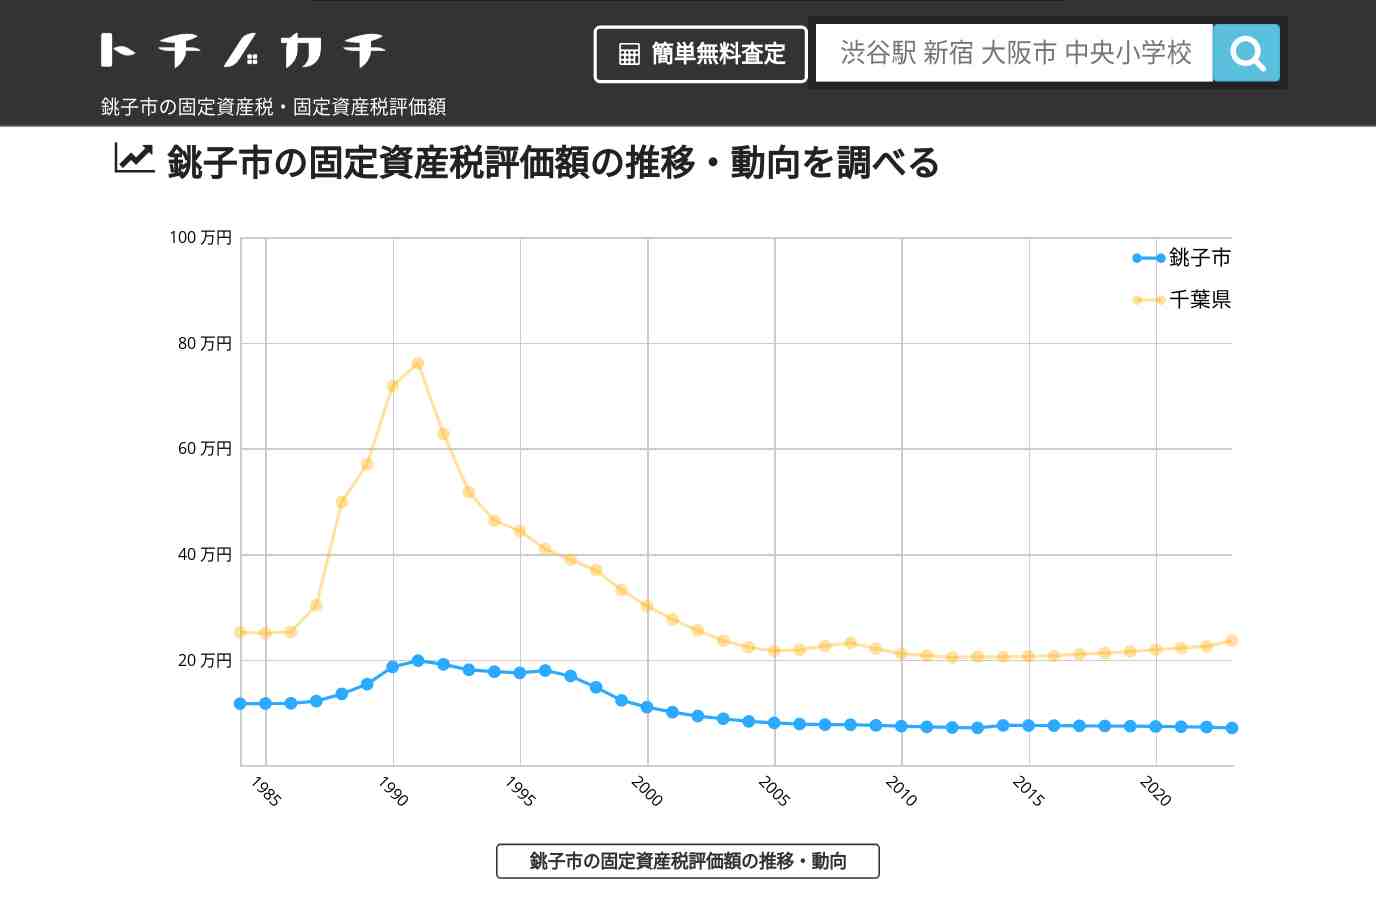 清水小学校(千葉県 銚子市)周辺の固定資産税・固定資産税評価額 | トチノカチ